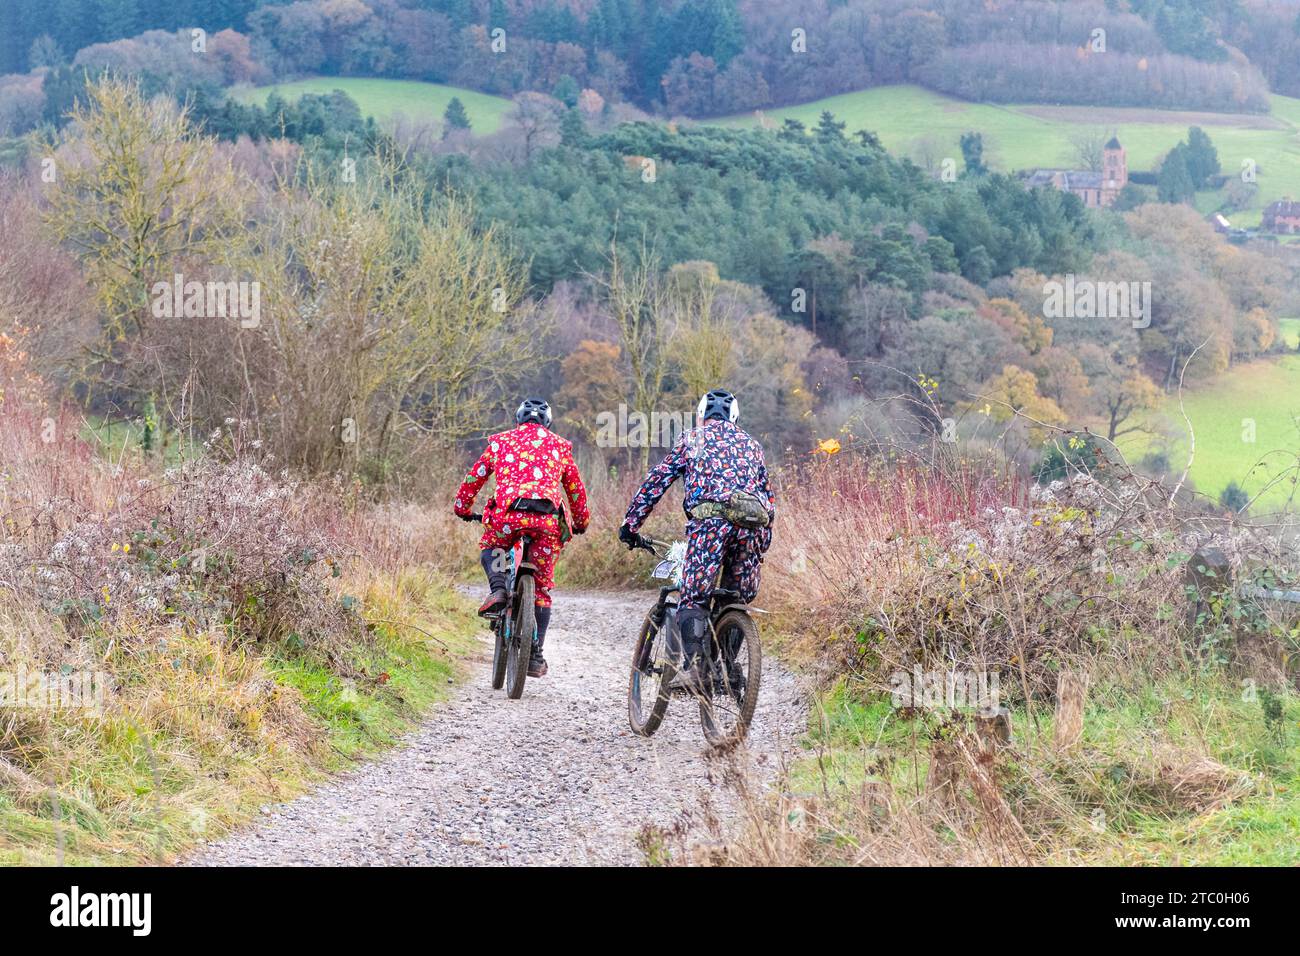 Dezember 2023. Teilnehmer, die ihre Mountainbikes beim Dirty Santa MTB Trail Cycling Event in den Surrey Hills, England, Großbritannien, fahren. Viele der Radfahrer trugen Weihnachtskostüme und wurden auf der Offroad-Route durch die Surrey Hills Area of Outstanding Natural Beauty sehr matschig. Stockfoto